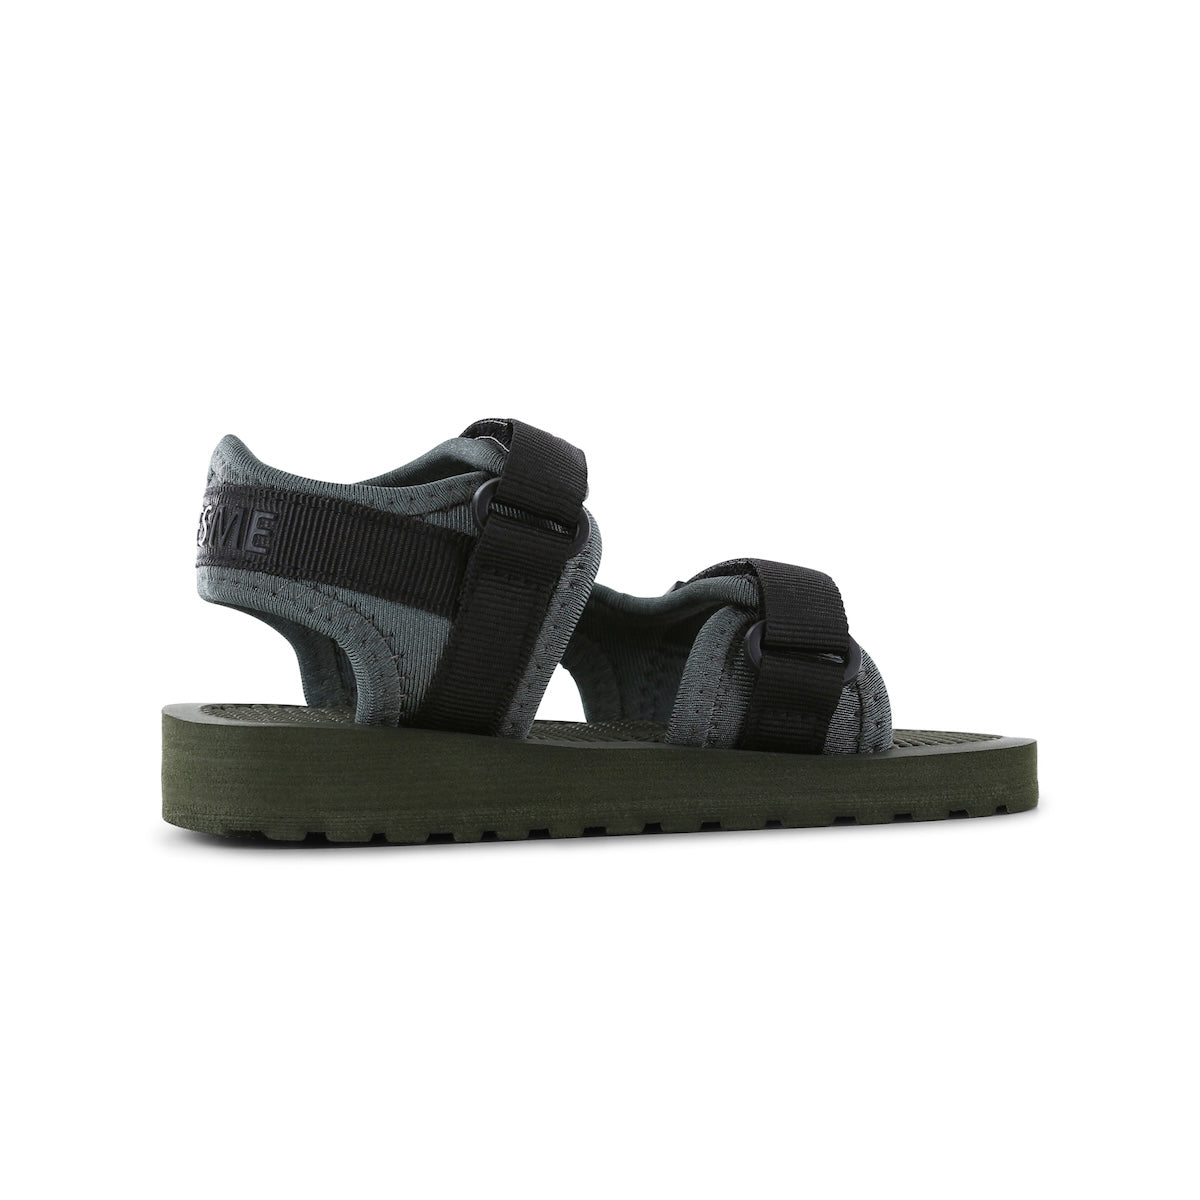 De Shoesme lichtgewicht sandaal black green is extreem licht van gewicht. Deze zomerschoen is ideaal voor kinderen die al goed kunnen lopen. Met deze sandaaltjes kunnen ze de hele dag buiten spelen. VanZus.